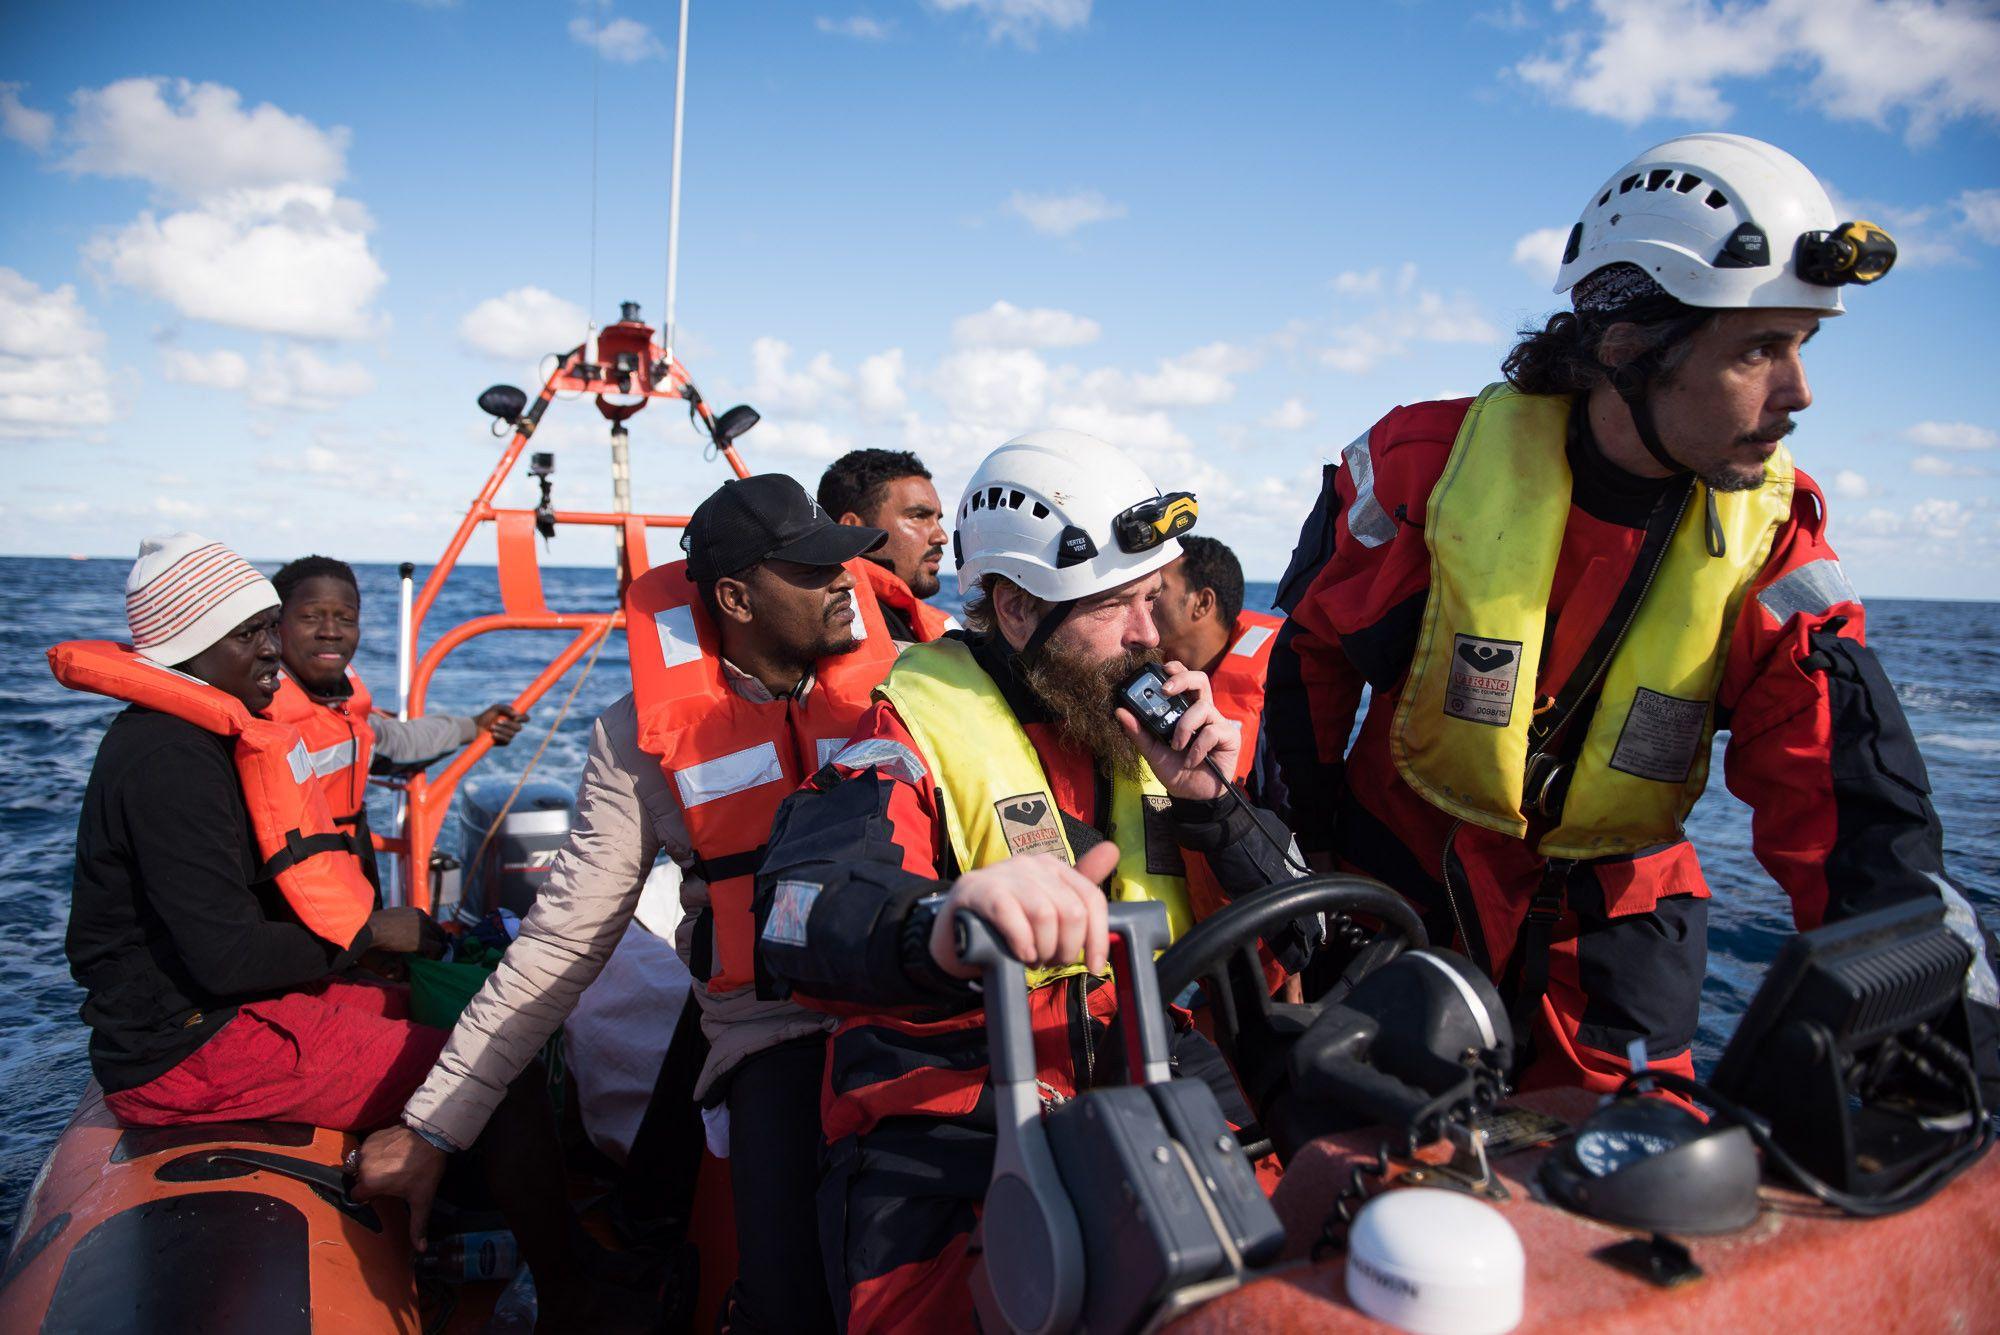 Rettungsaktionen auf dem Mittelmeer sind eine Notlösung, es braucht legale Fluchtwege.